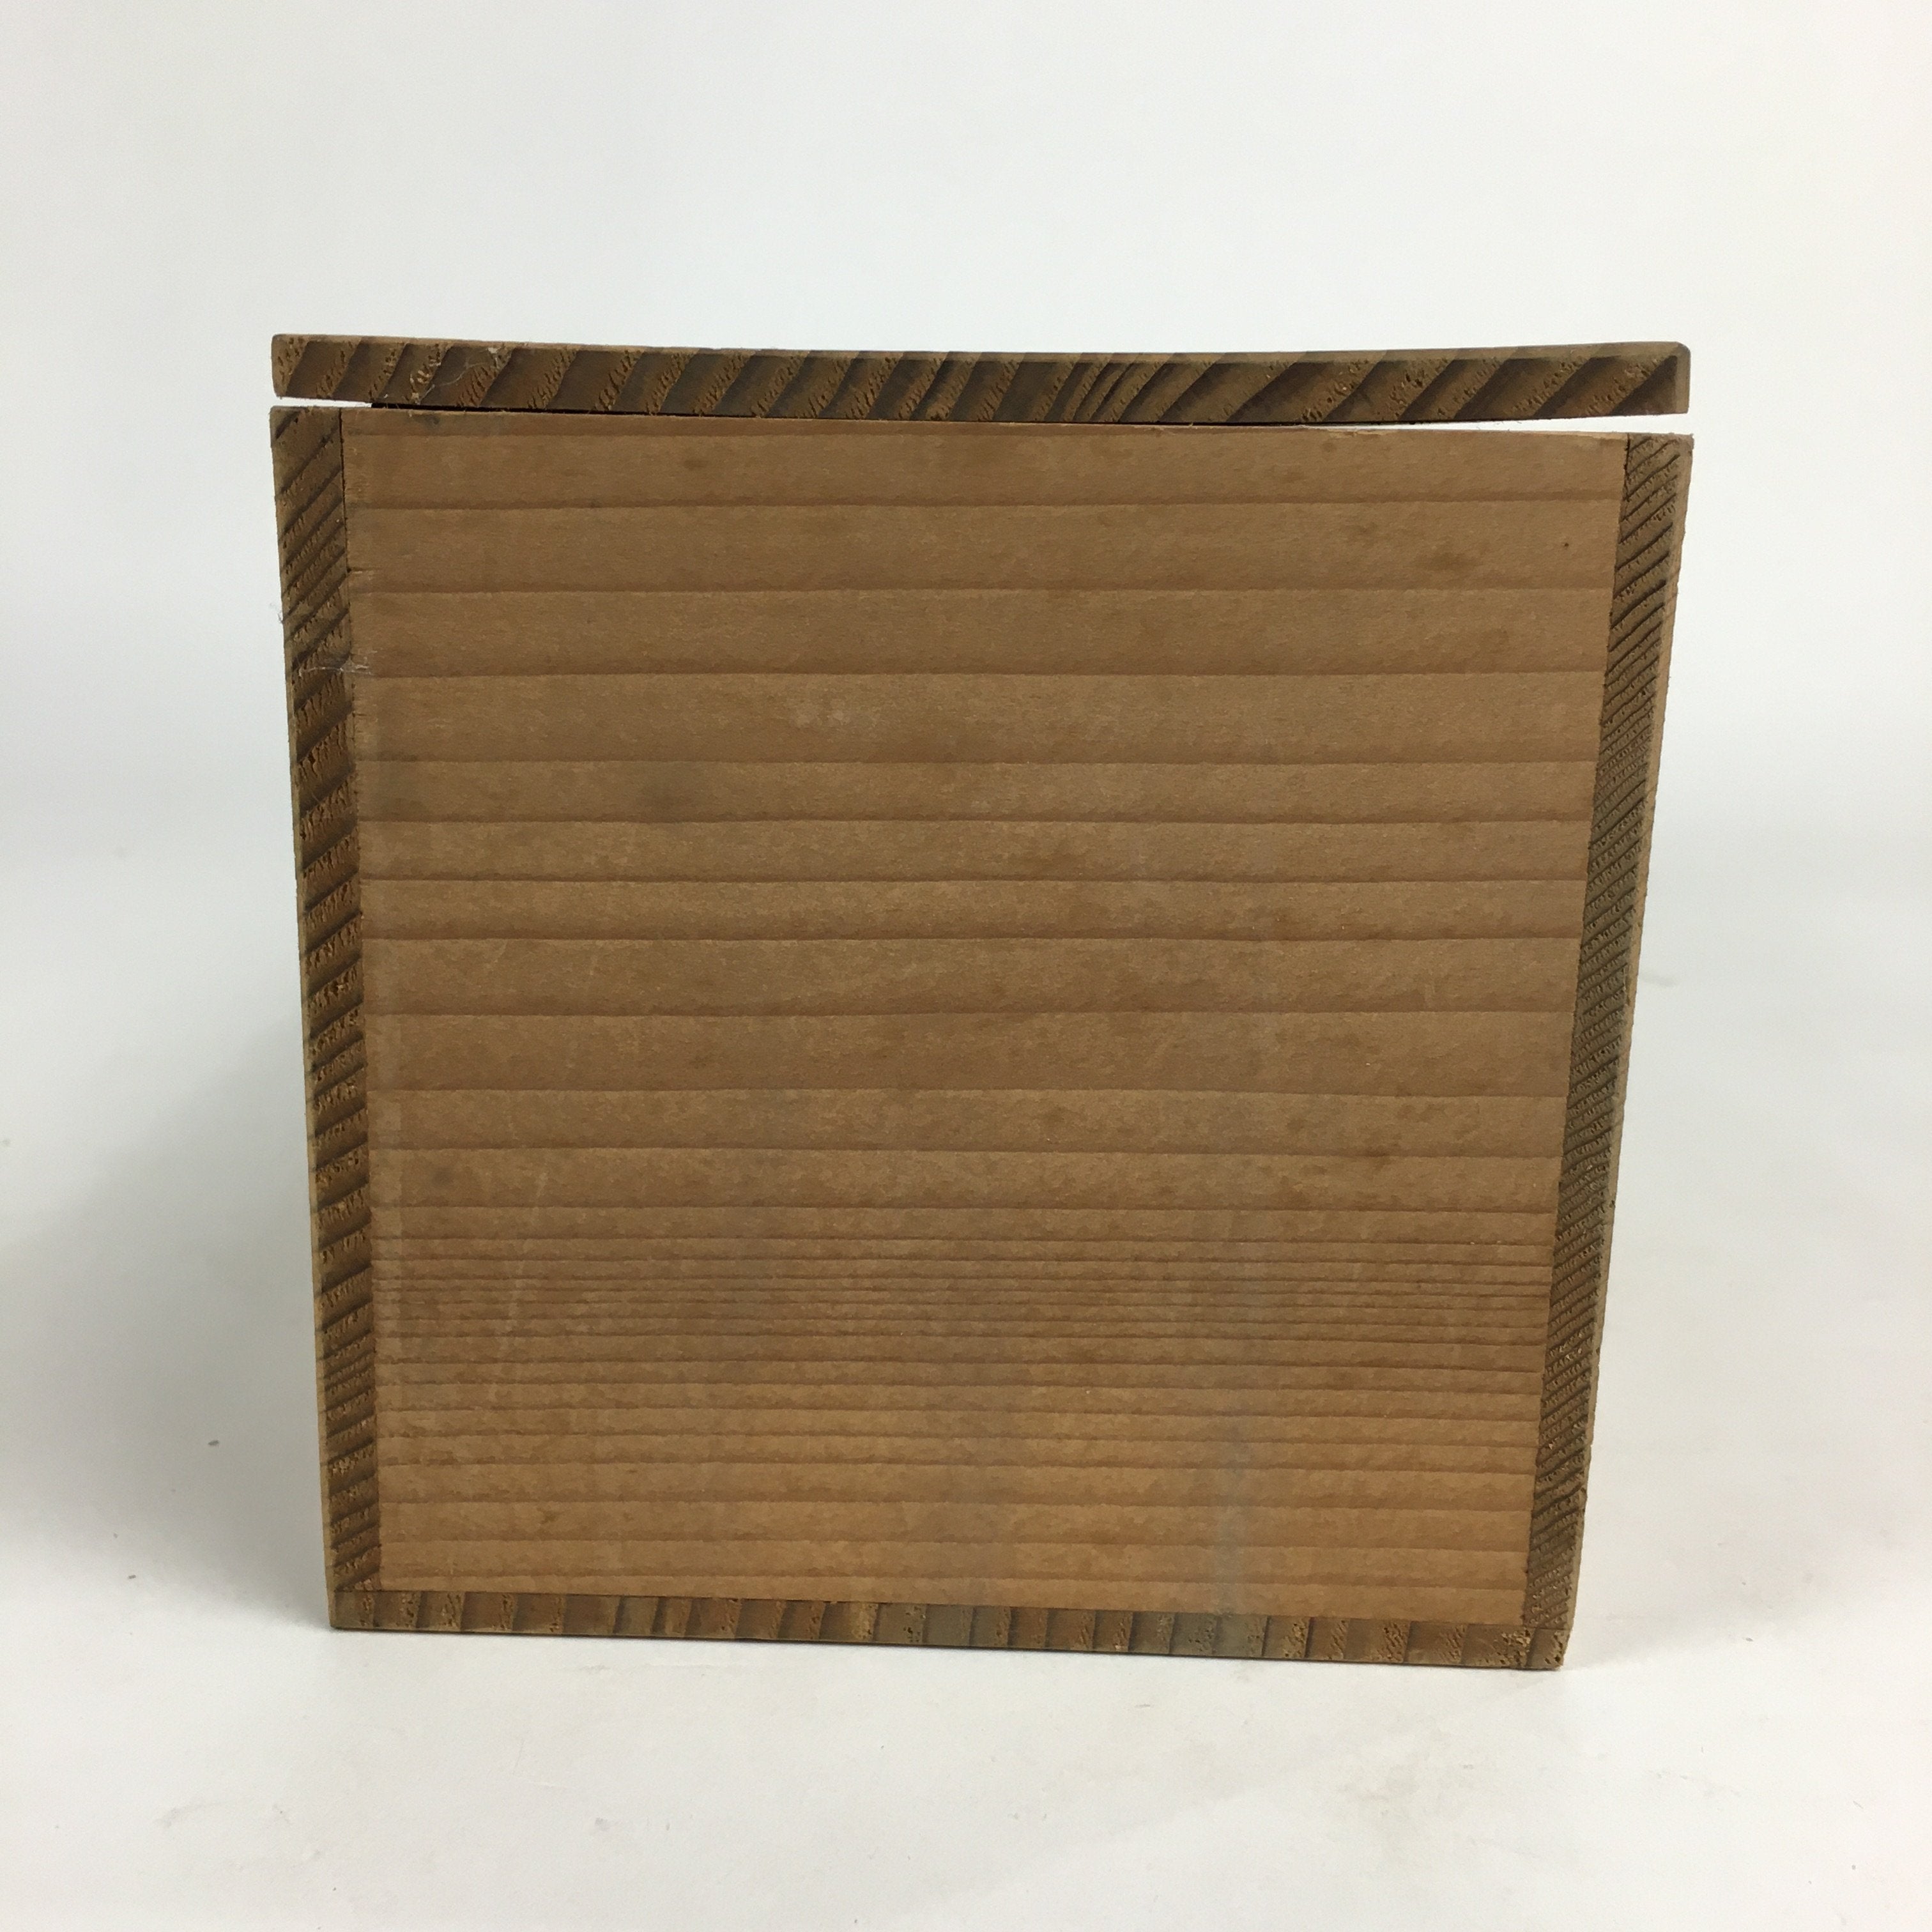 Japanese Wooden Storage Box Pottery Vtg Hako Inside 31.5x11.5x11.6cm WB824